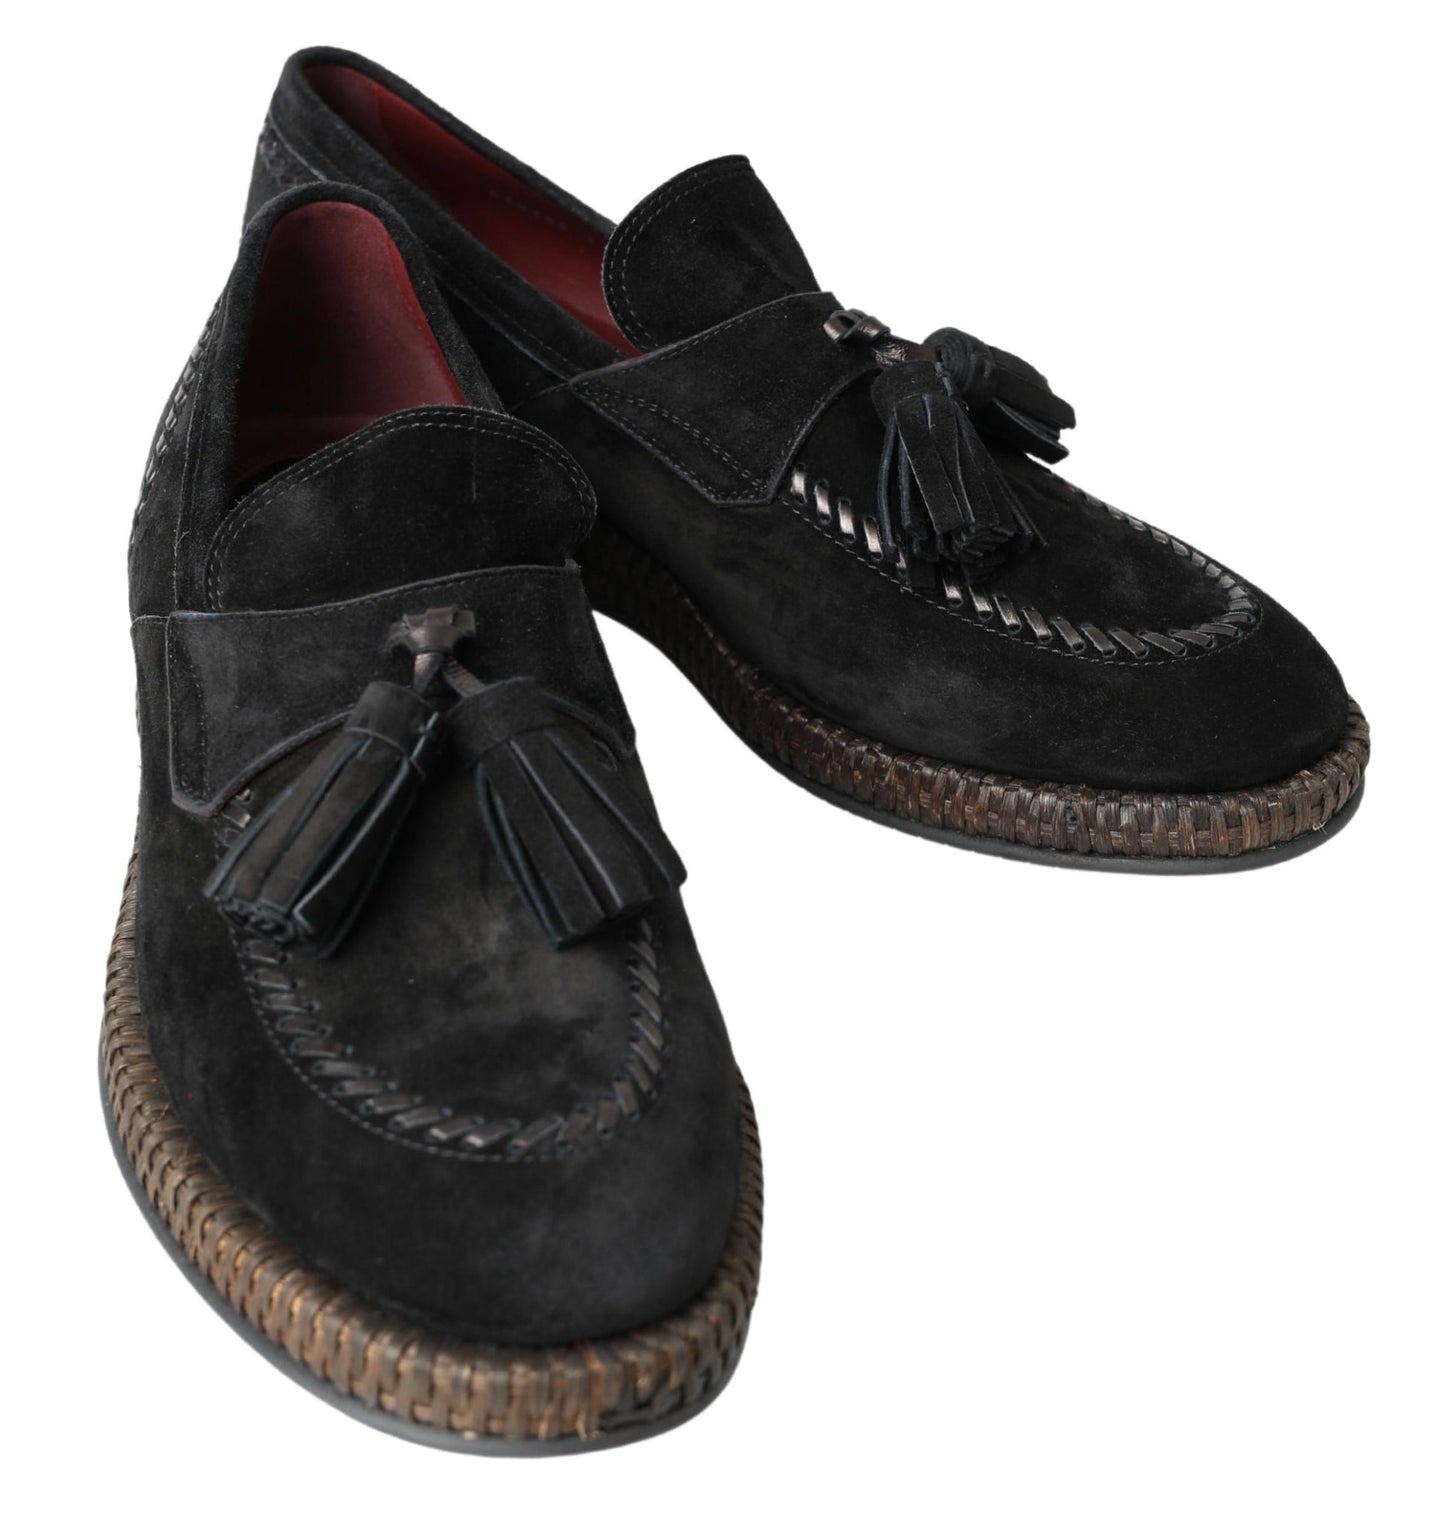 Elegant Black Suede Espadrilles Sneakers